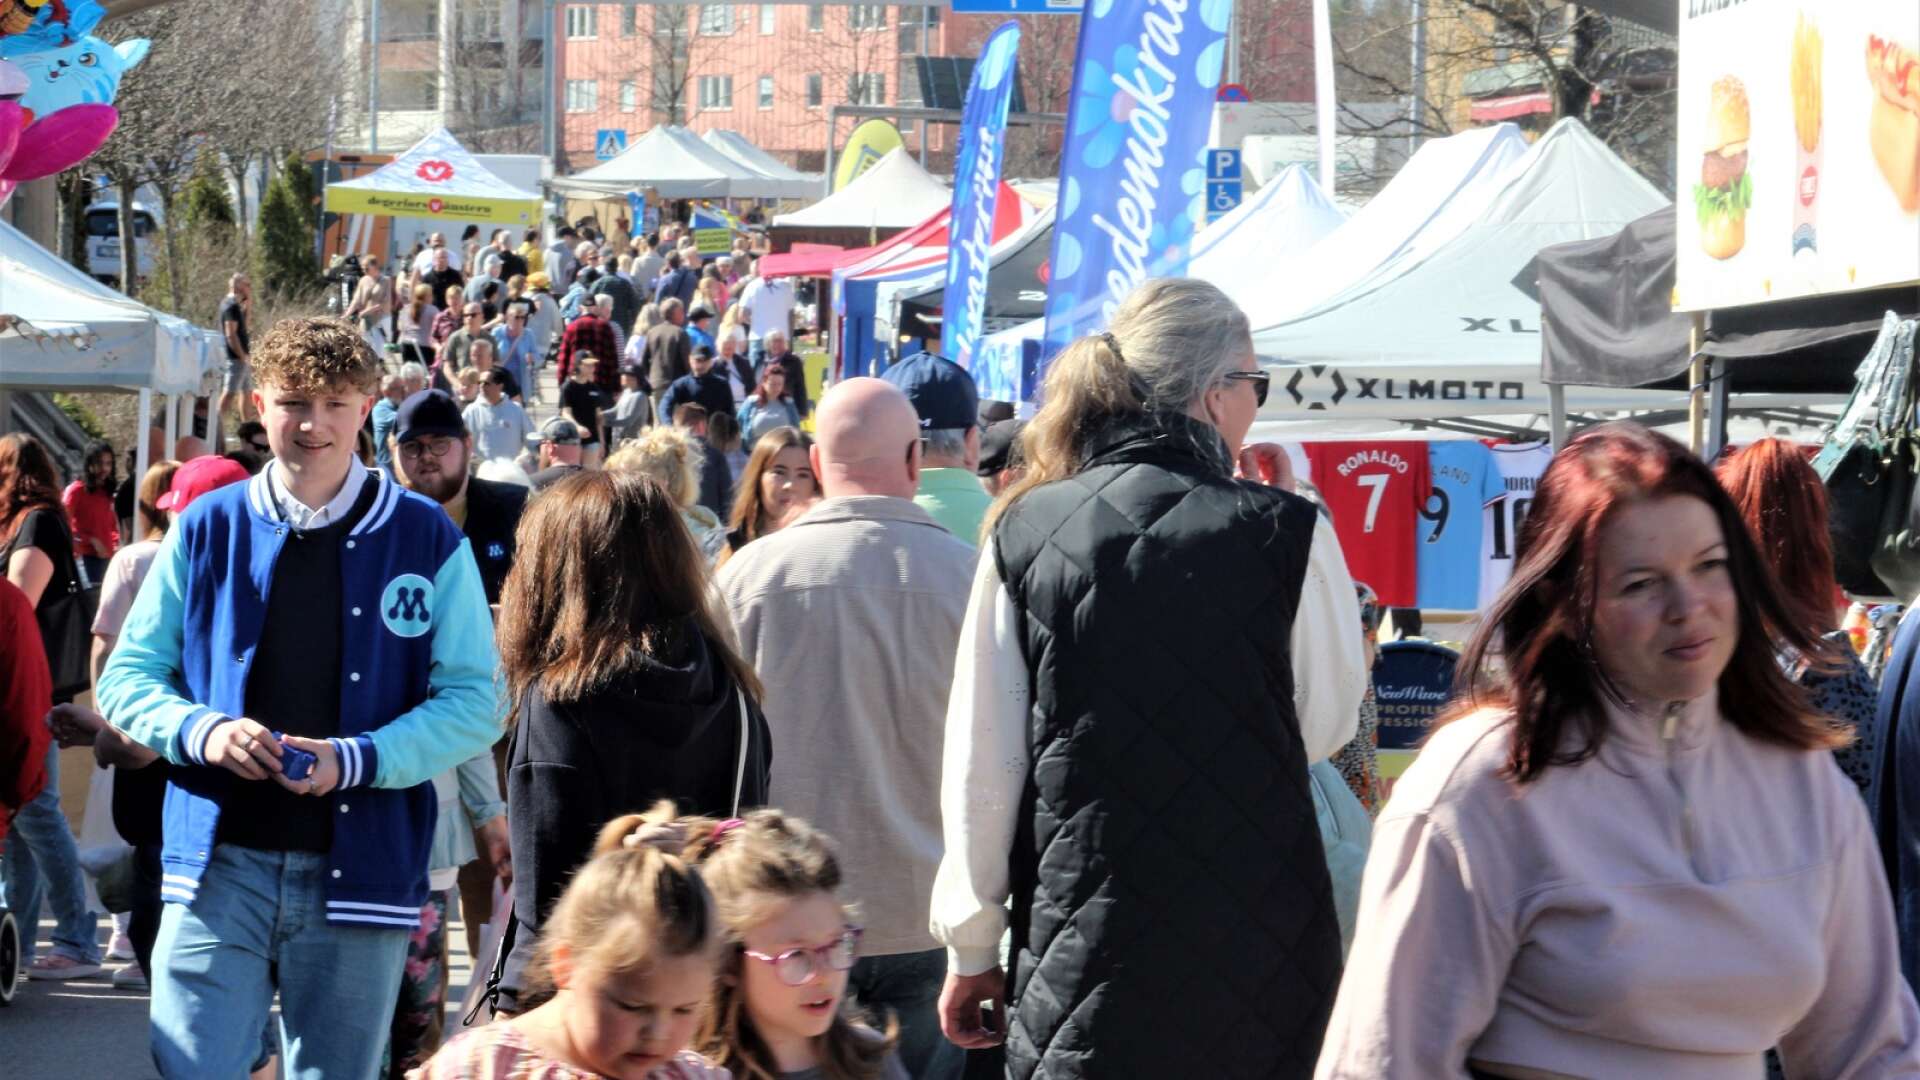 Degerforsfestens marknad i centrum besöktes av mellan 15 000 och 17 000 personer, enligt uppskattning av representant för knalleorganisationen.